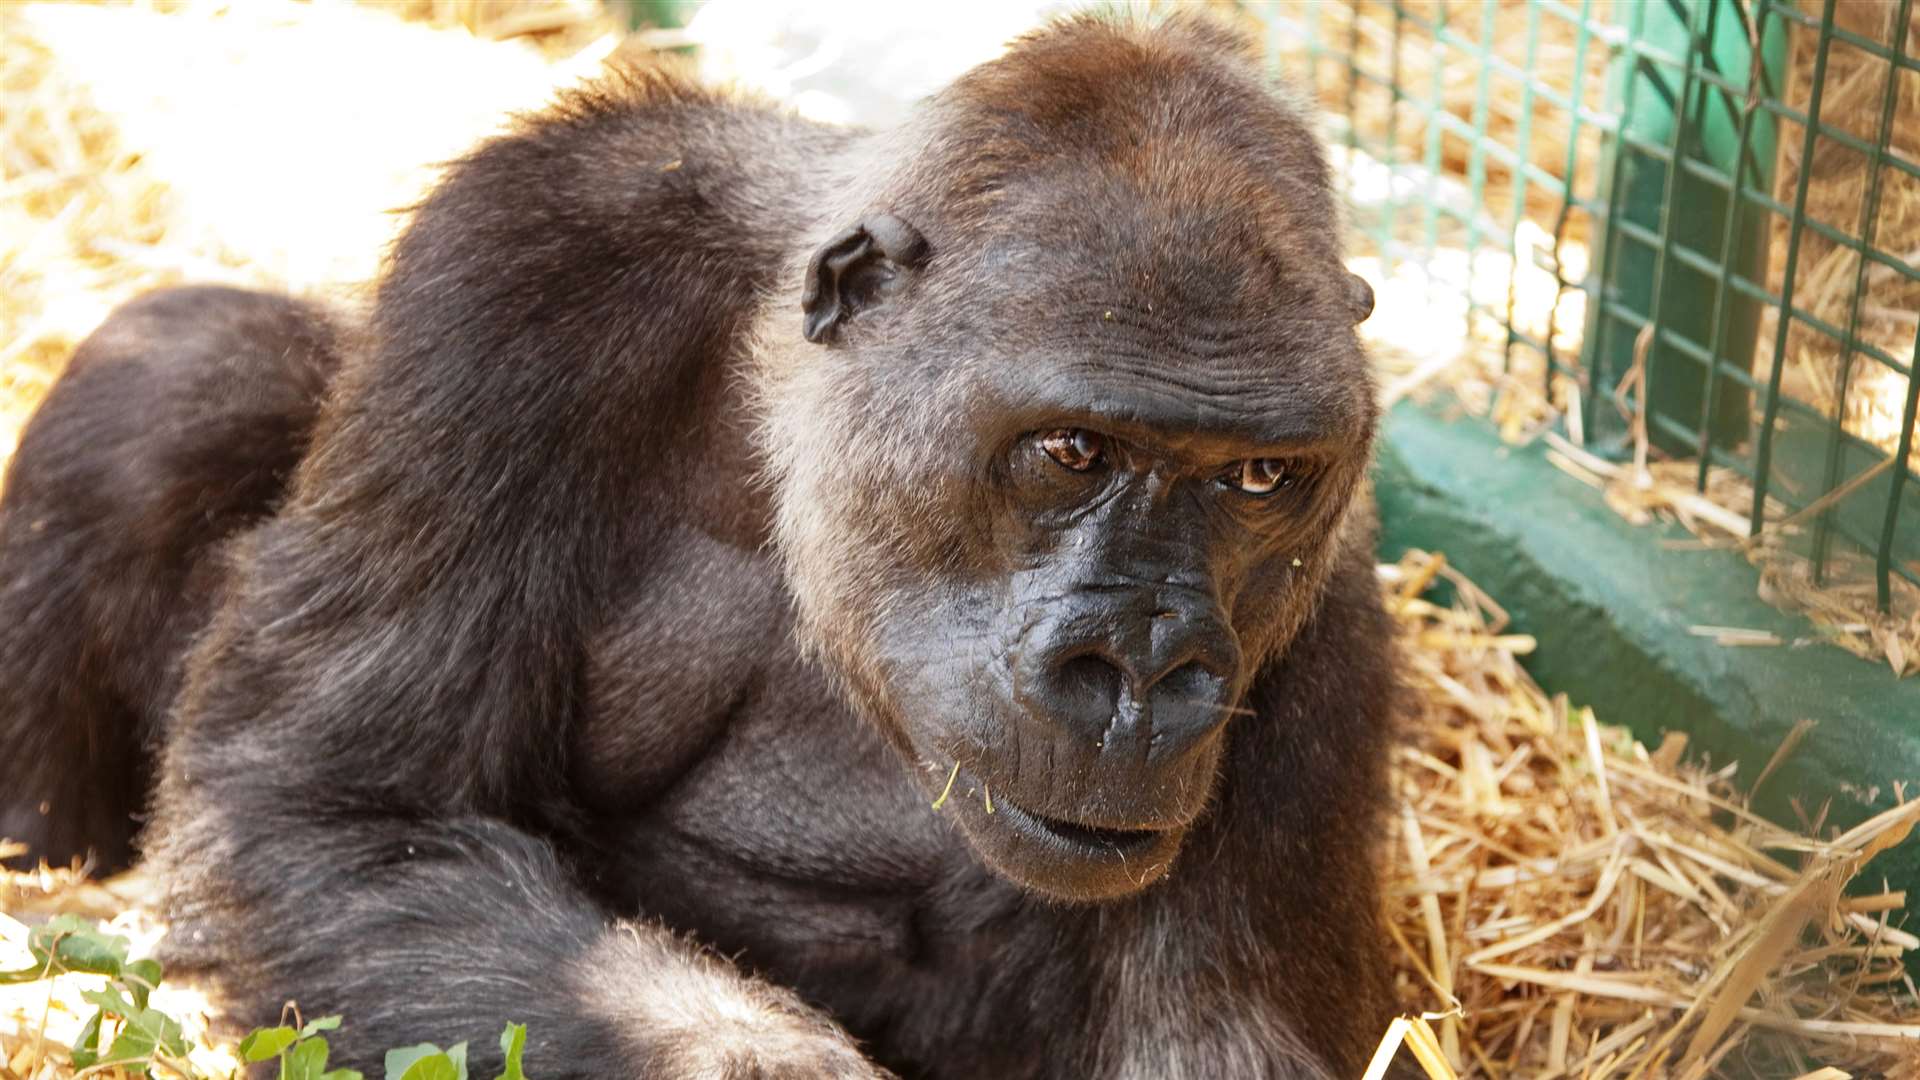 Mouila the gorilla, celebrating her 50th birthday in 2010